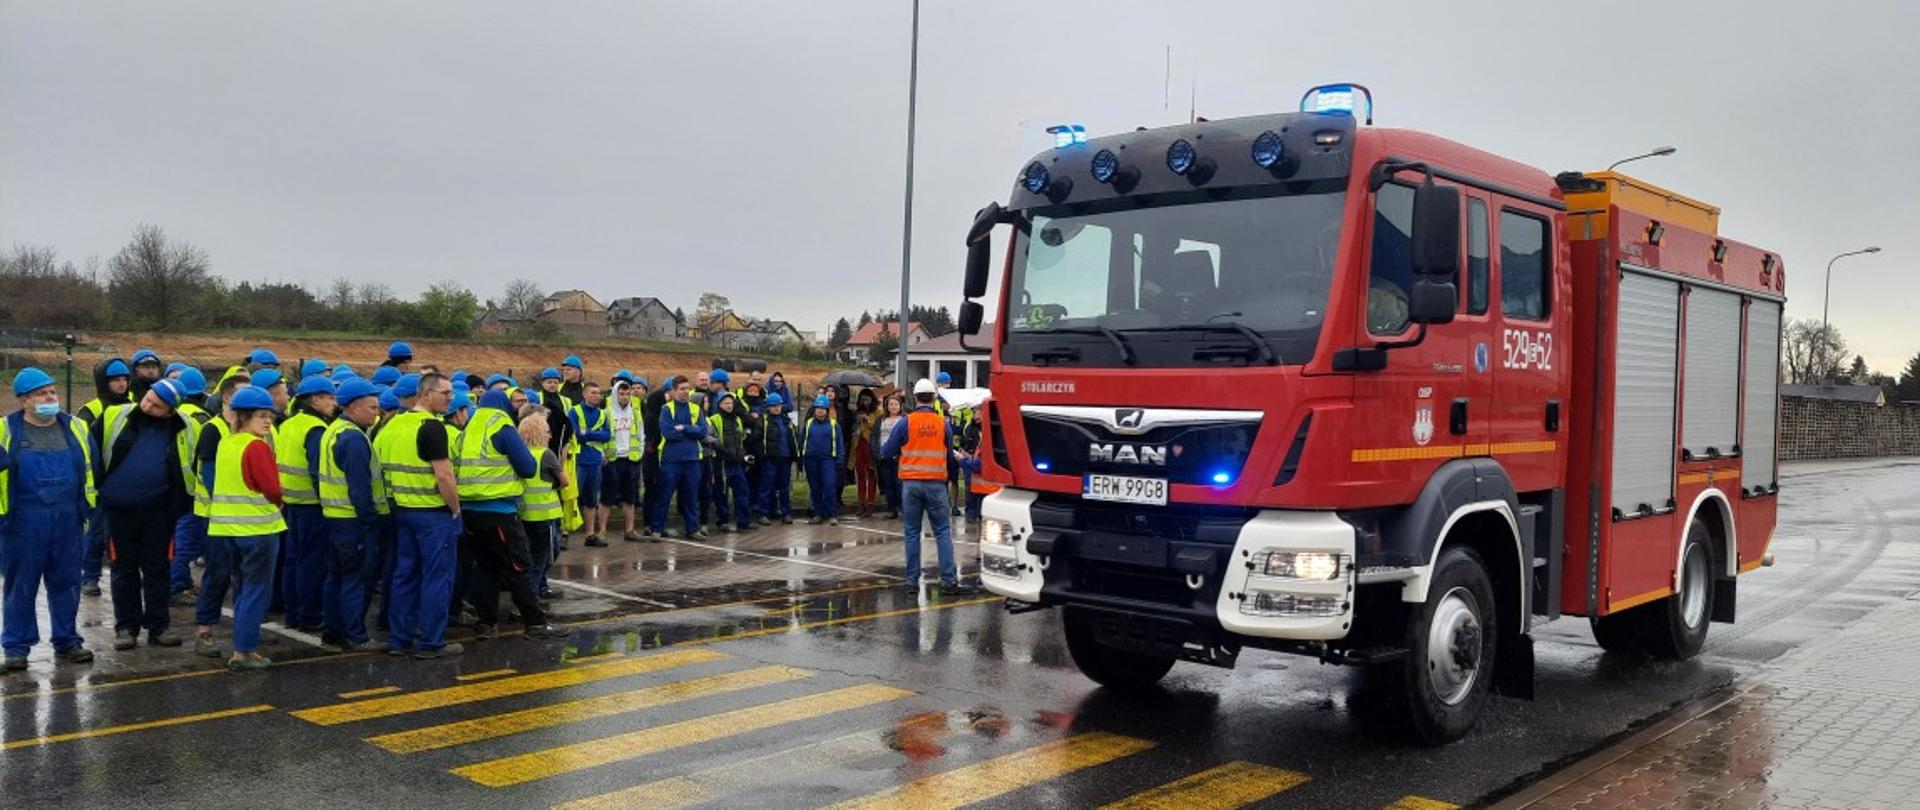 Zdjęcie przedstawia grupę ludzi ubranych w niebiesko-żółte stroje robocze/magazynowe, oraz mający niebieskie kaski na głowie. Stoją oni w punkcie ewakuacji na parkingu obok nich stoi bojowy samochód strażacki.